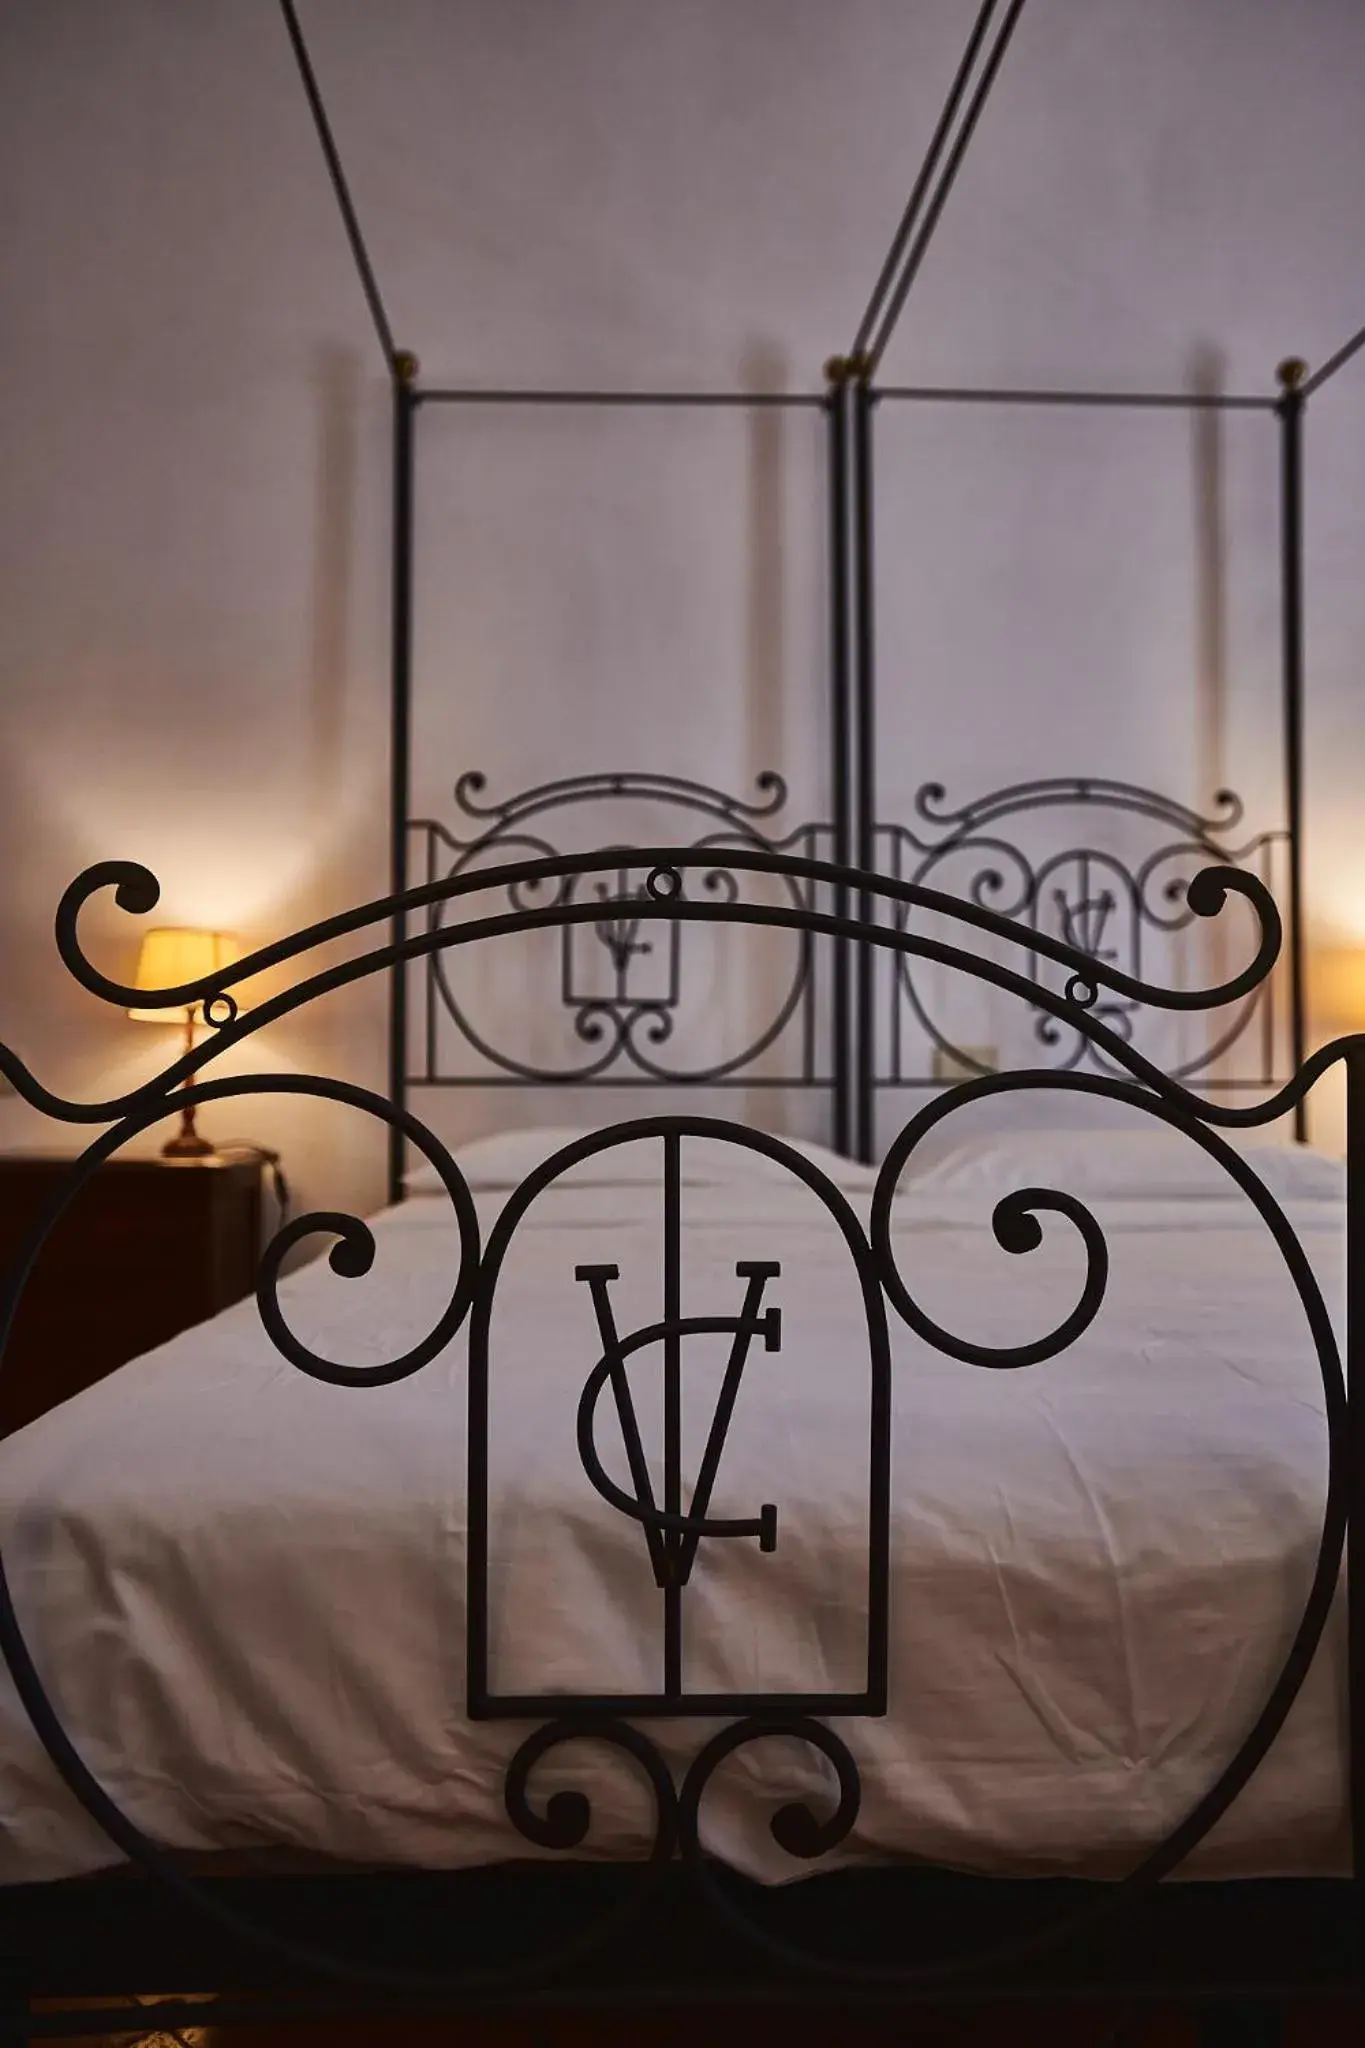 Bed in Hotel Villa Ciconia